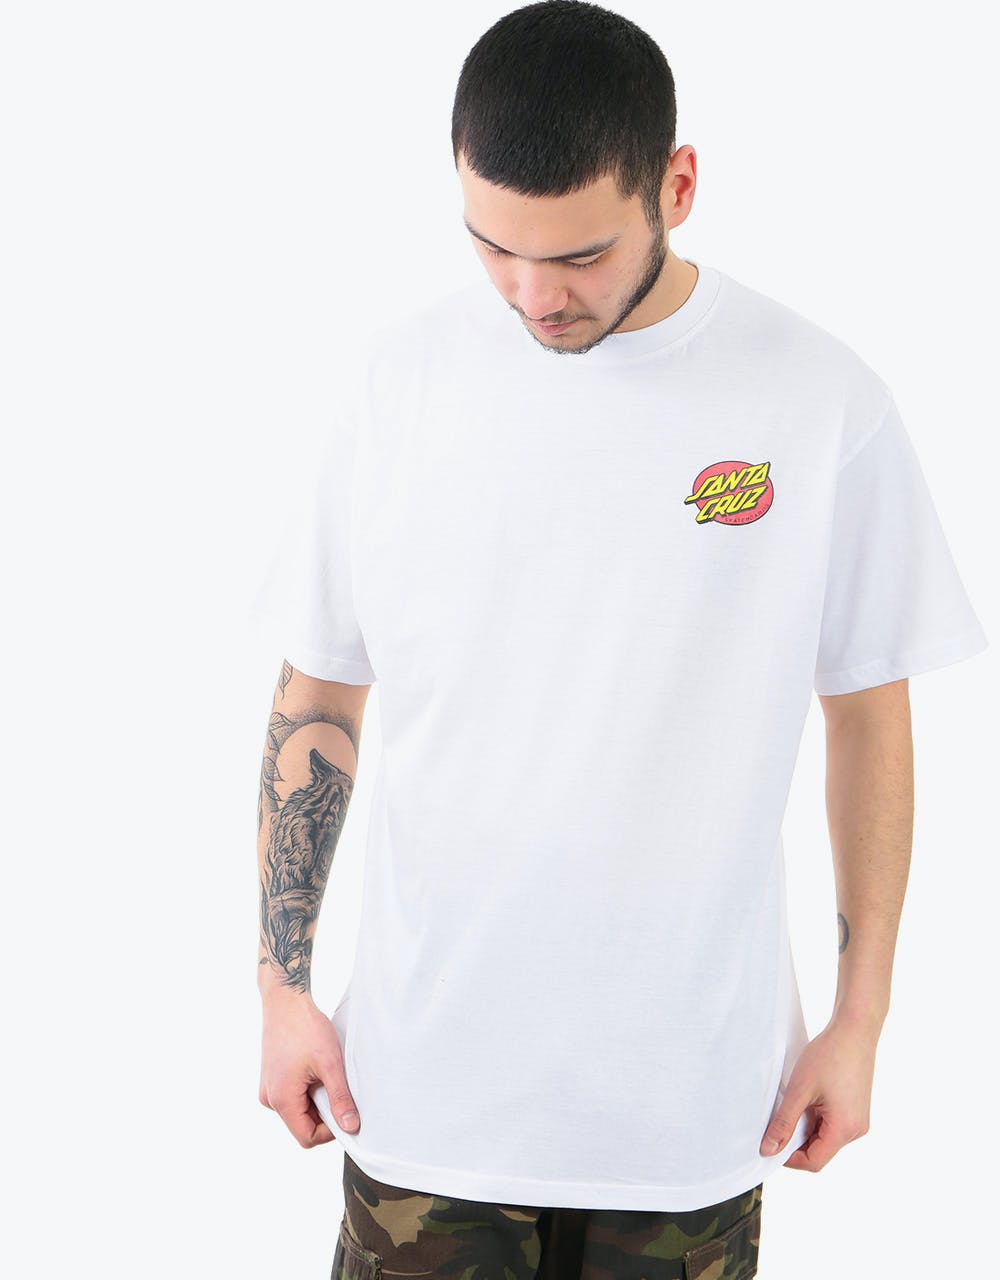 Santa Cruz Slashed T-Shirt - White